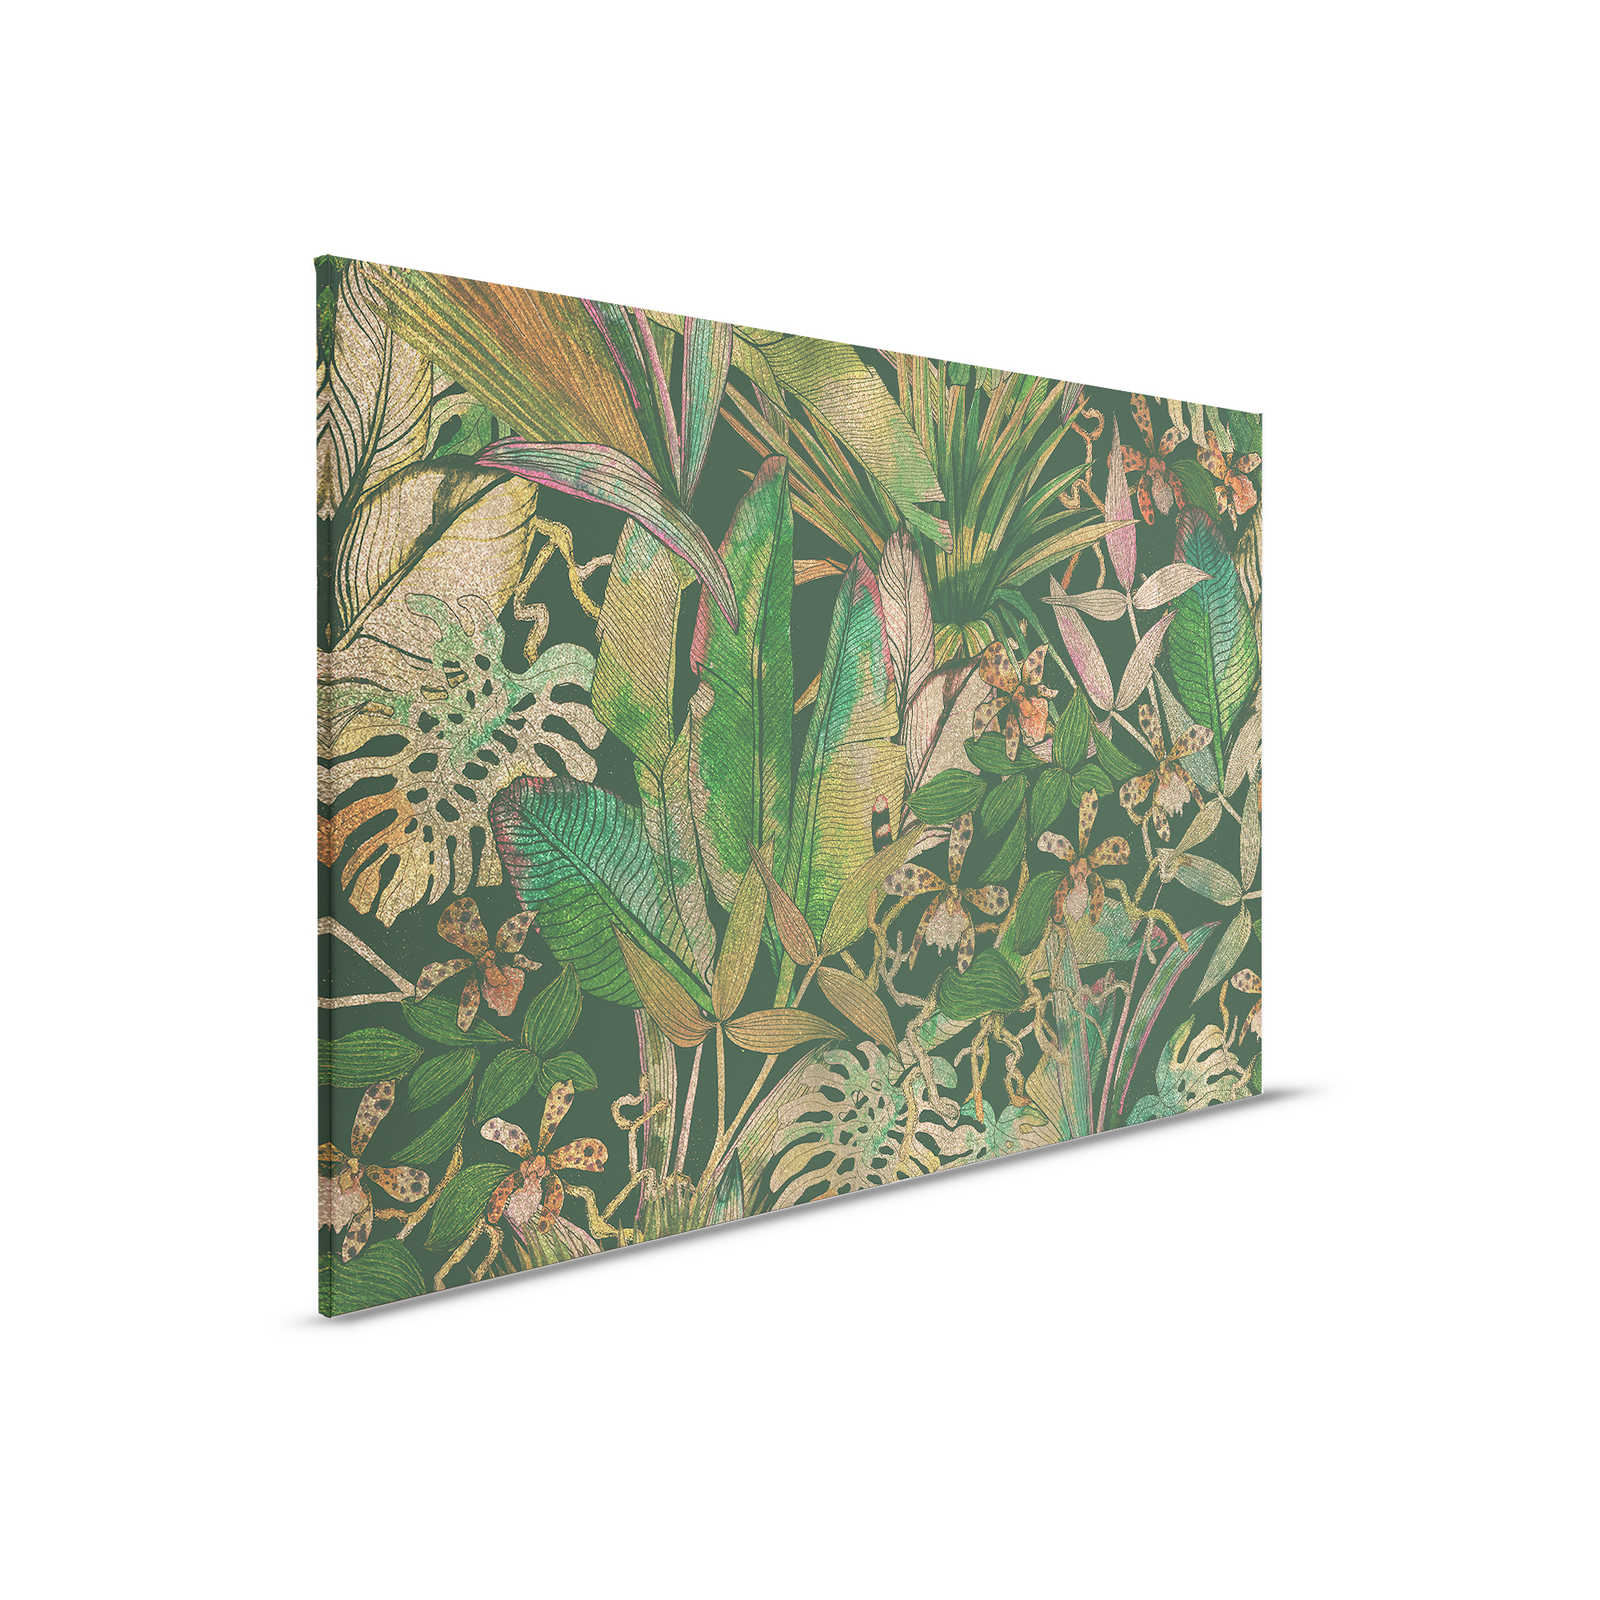 Toile motif jungle avec feuilles et fleurs - 0,90 m x 0,60 m
